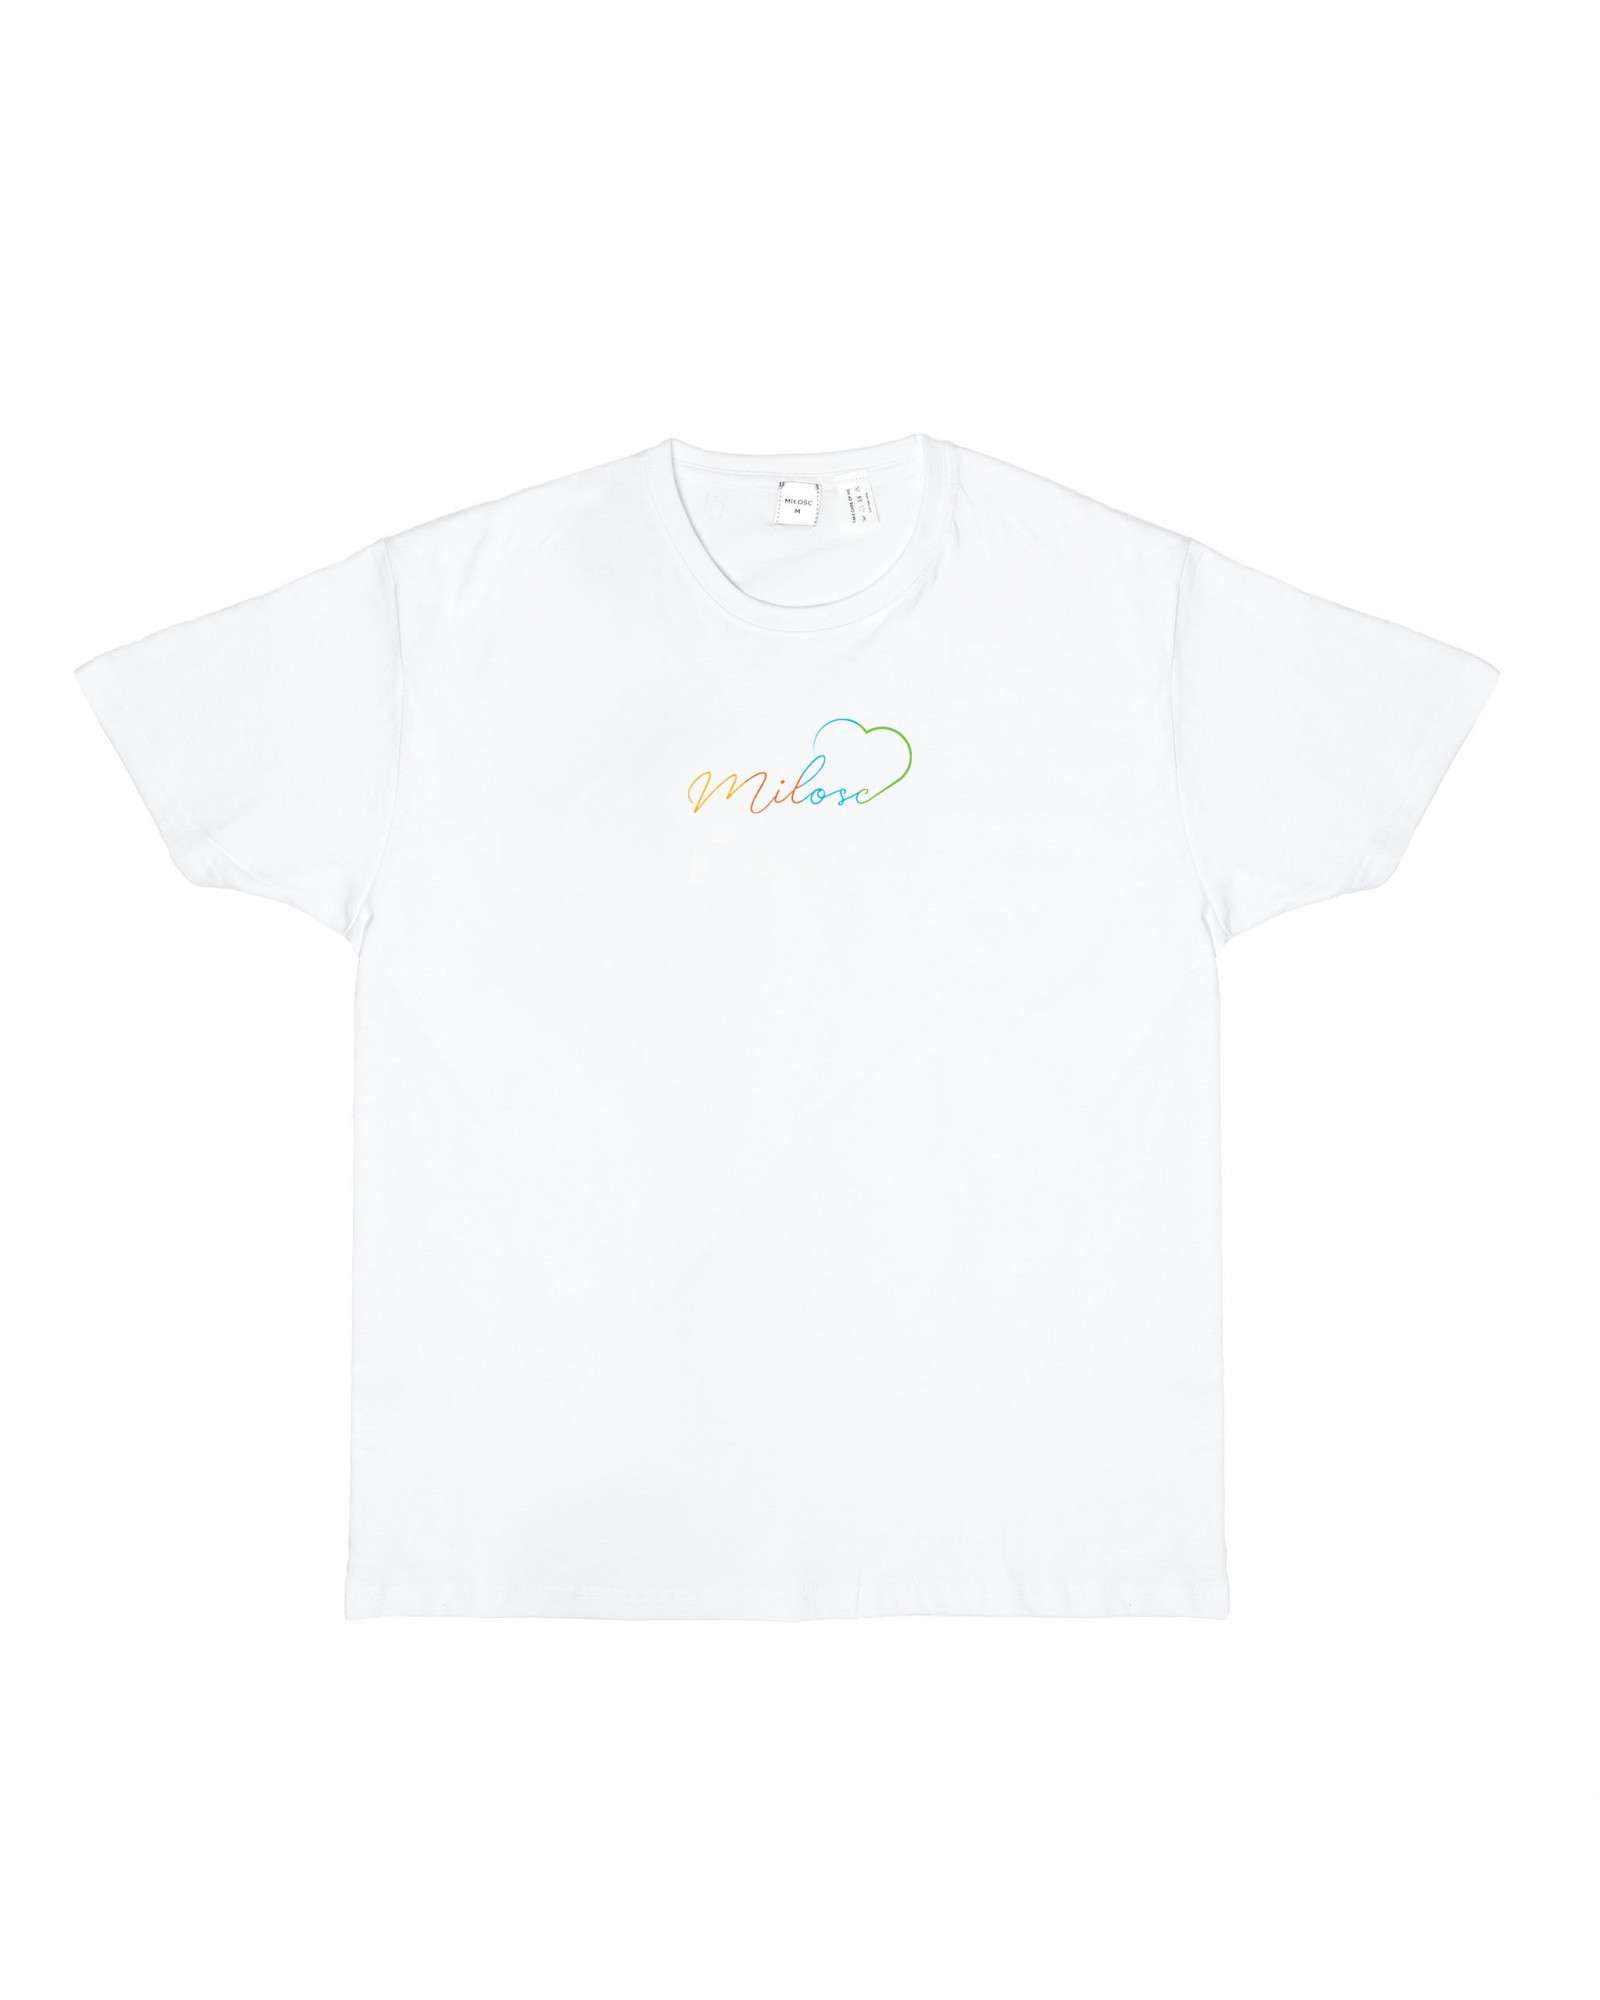 Nowość! t-shirt biały z nowym logo tęczowym